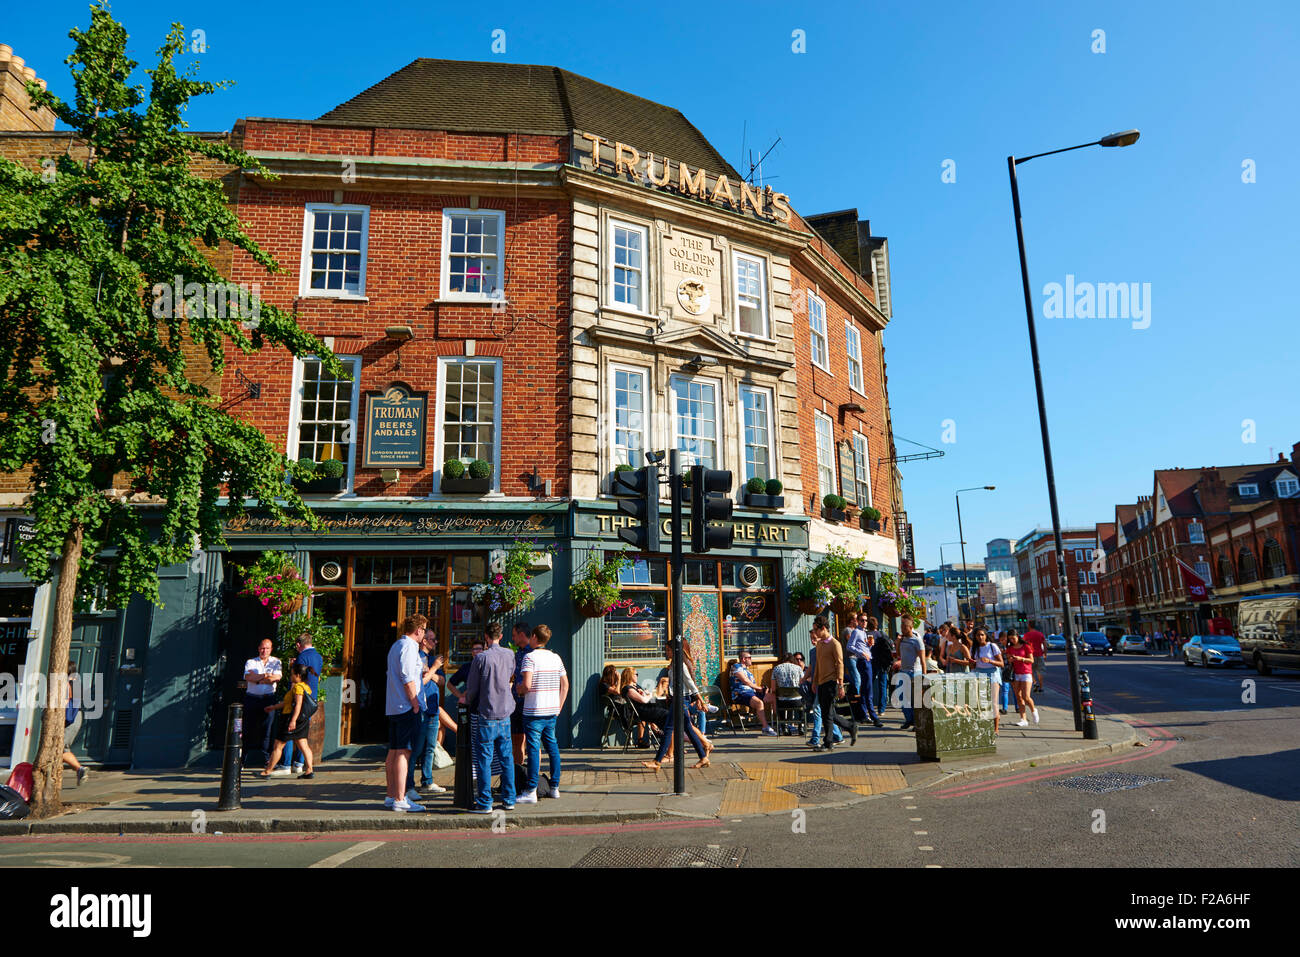 Das goldene Herz Trumans Pub, Commercial St, London, Vereinigtes Königreich, Europa Stockfoto